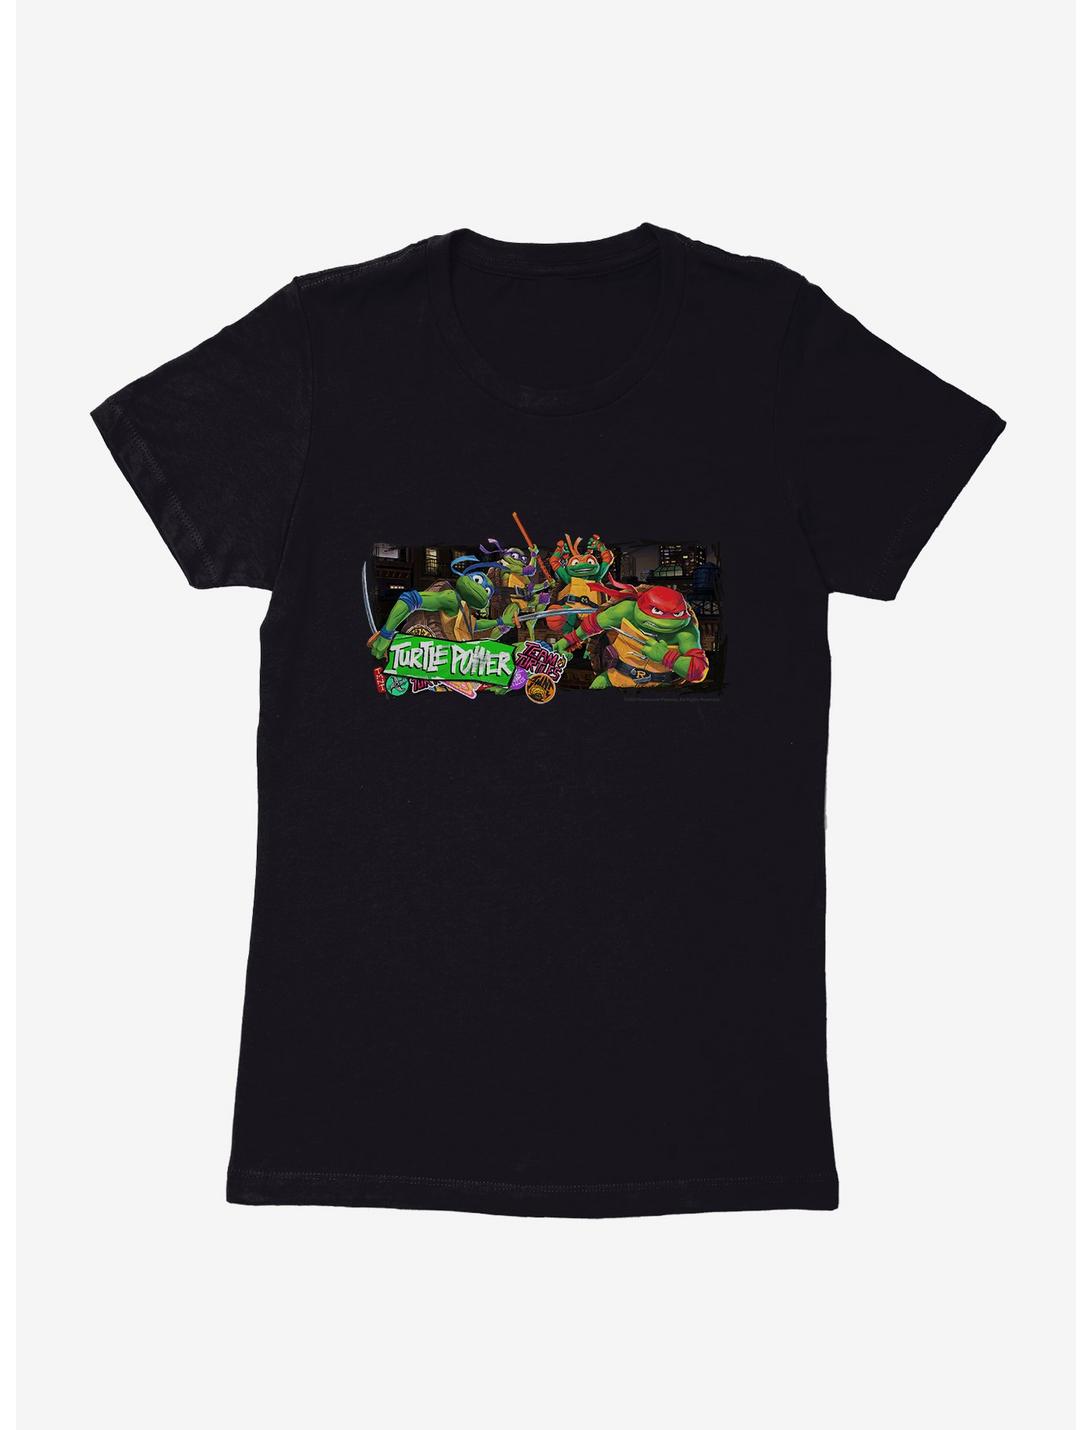 Teenage Mutant Ninja Turtles: Mutant Mayhem Team Turtles Womens T-Shirt, , hi-res